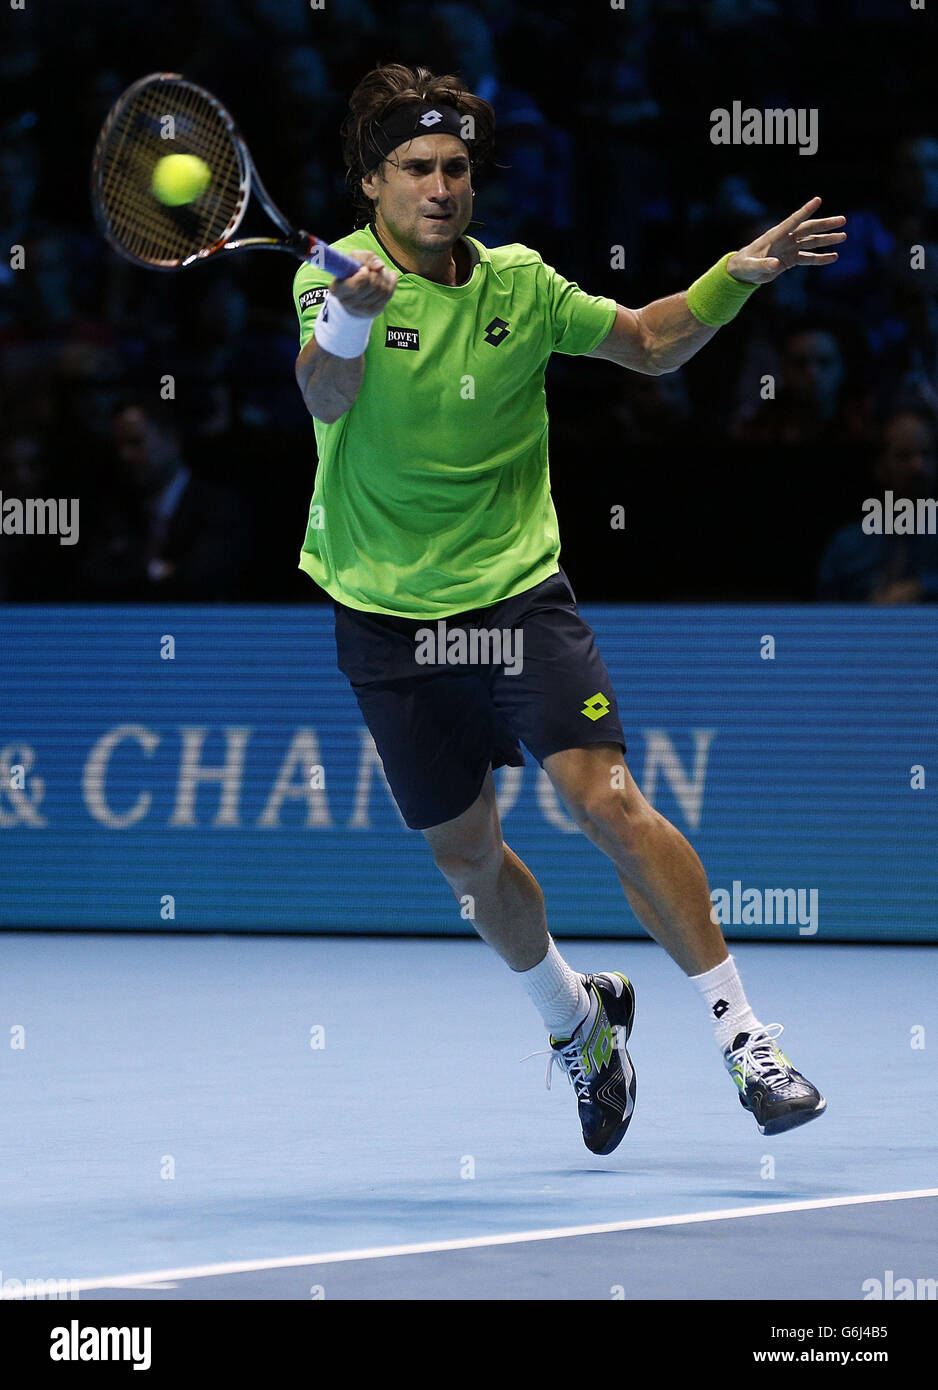 David Ferrer concurrence Stanislas Wawrinka pendant la cinquième journée des finales du Barclays ATP World Tour à l'O2 Arena, Londres. Banque D'Images